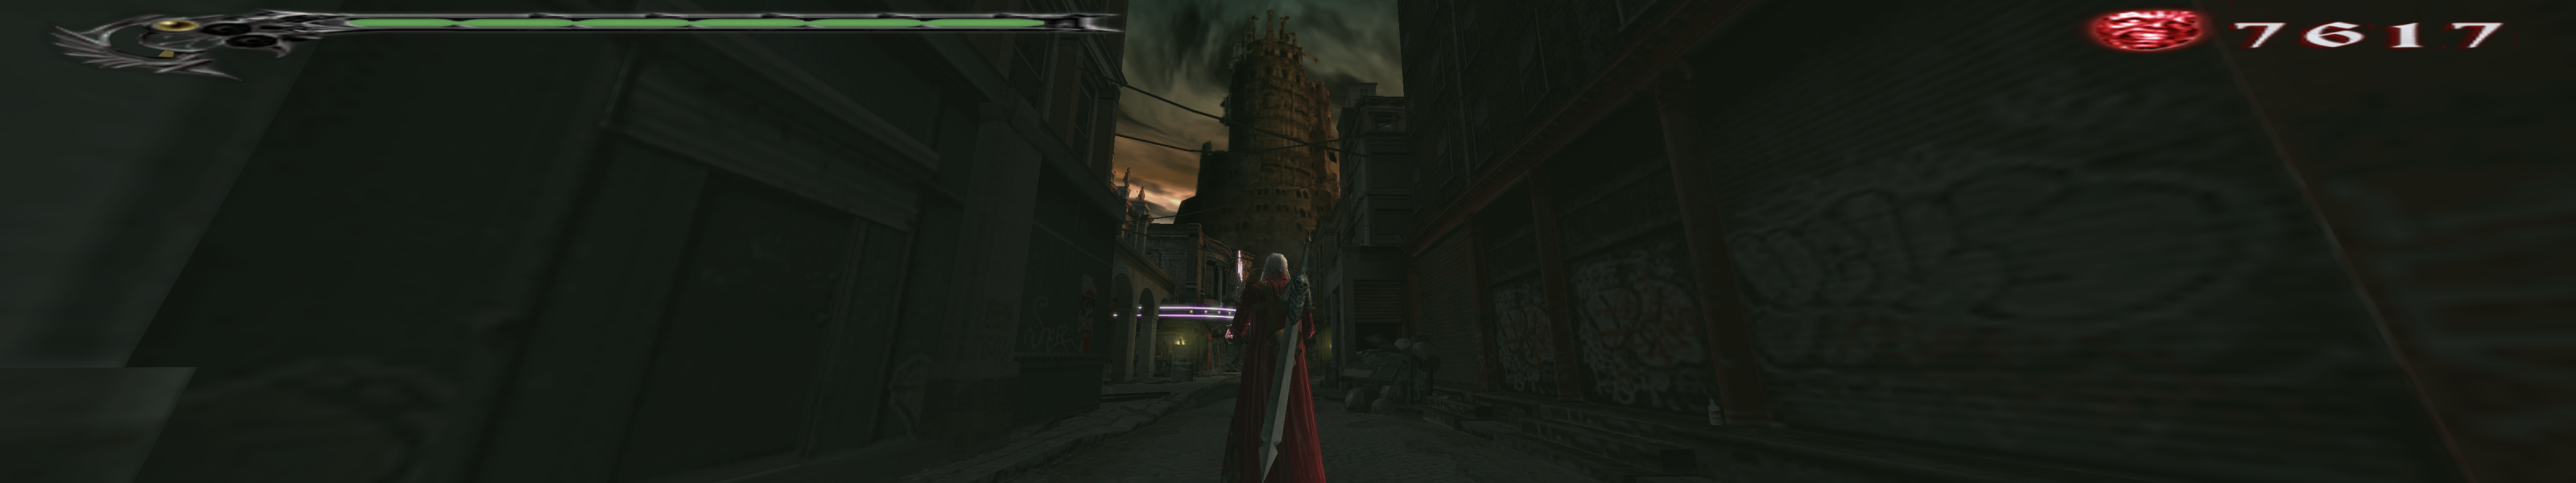 Devil May Cry 3: Renderização em 3D de Dante's Awakening Vergil